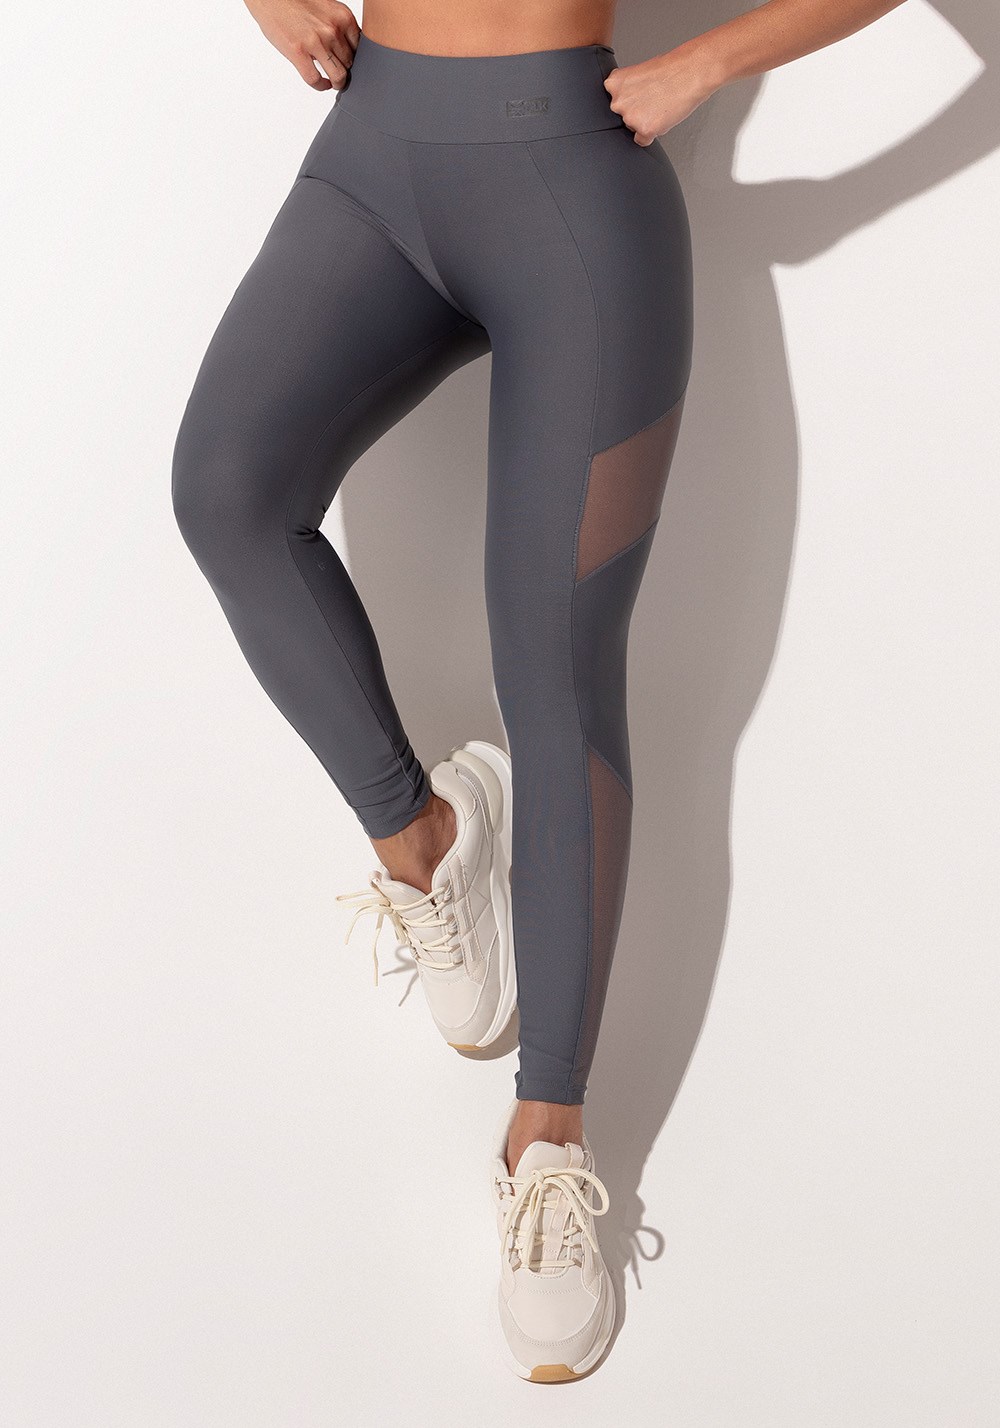 Legging fitness feminina marrom com recortes em tule intense